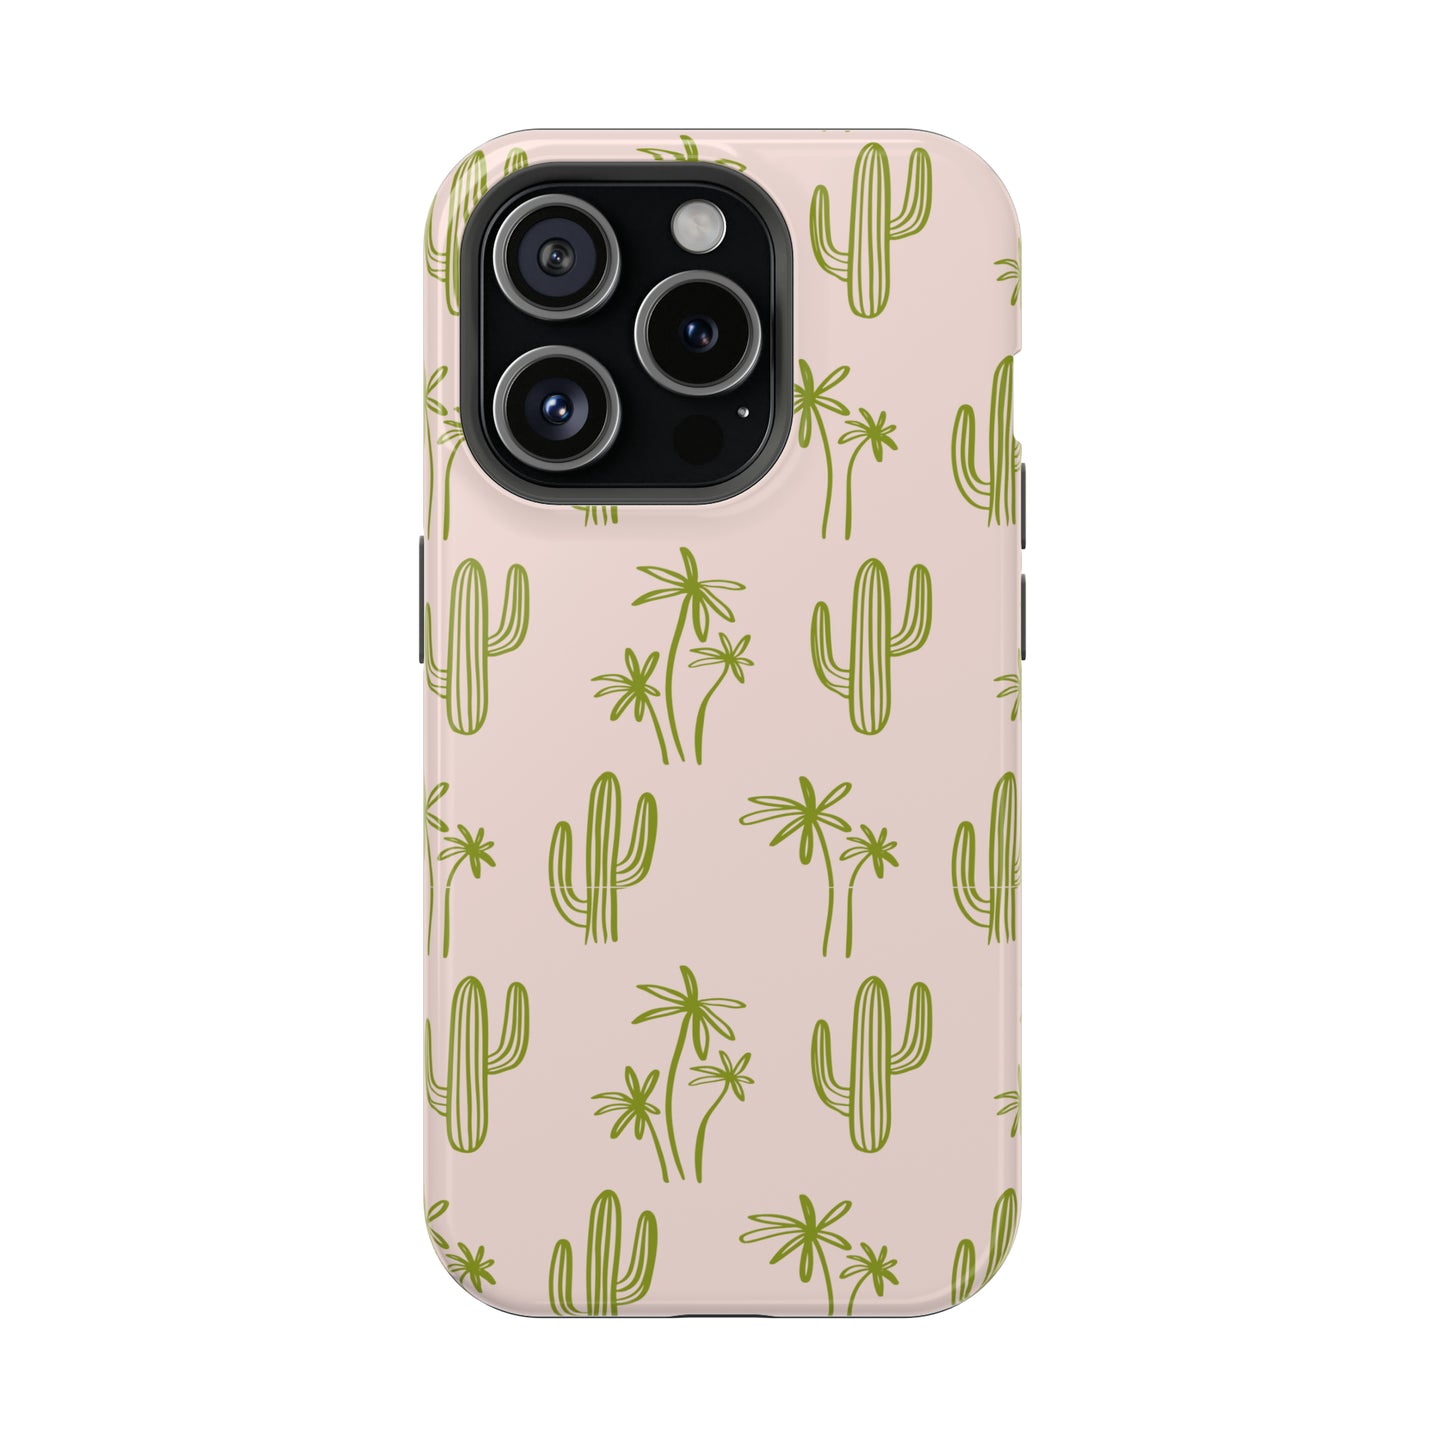 Cacti Cuties - MagSafe Tough iPhone Case